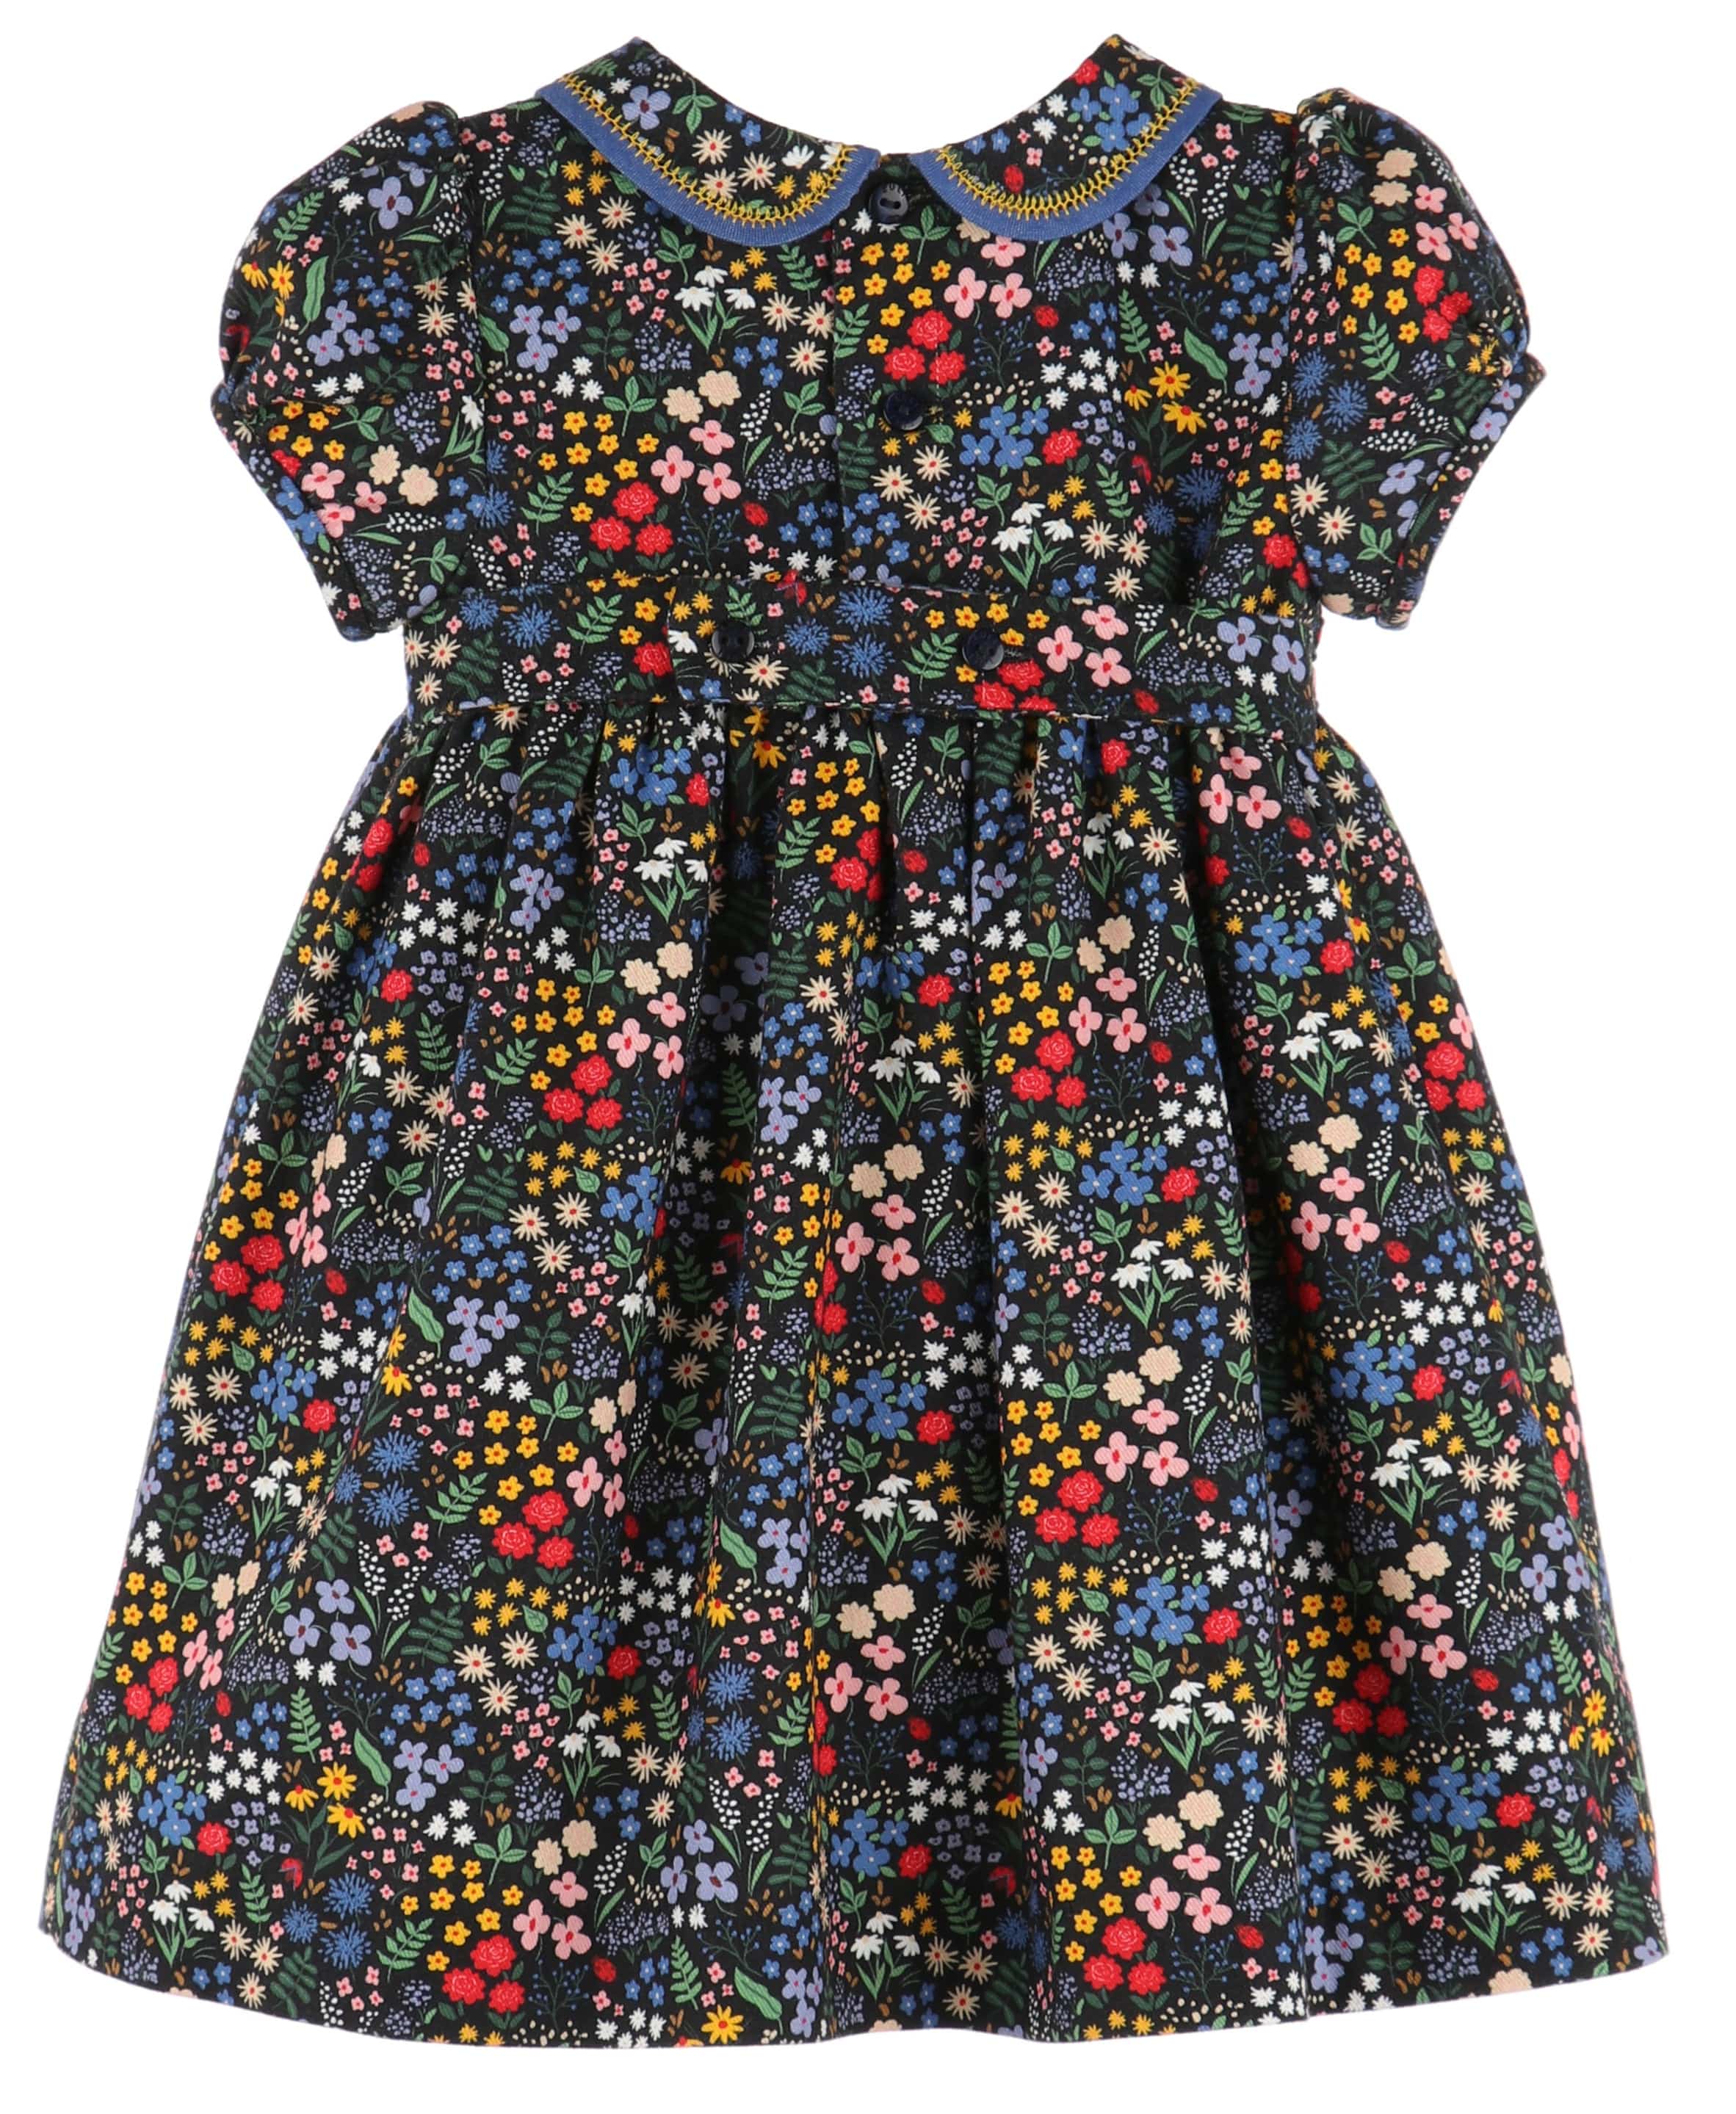 C&A - Casero & Associates Casero & Associates Midnight Garden Dress - Little Miss Muffin Children & Home